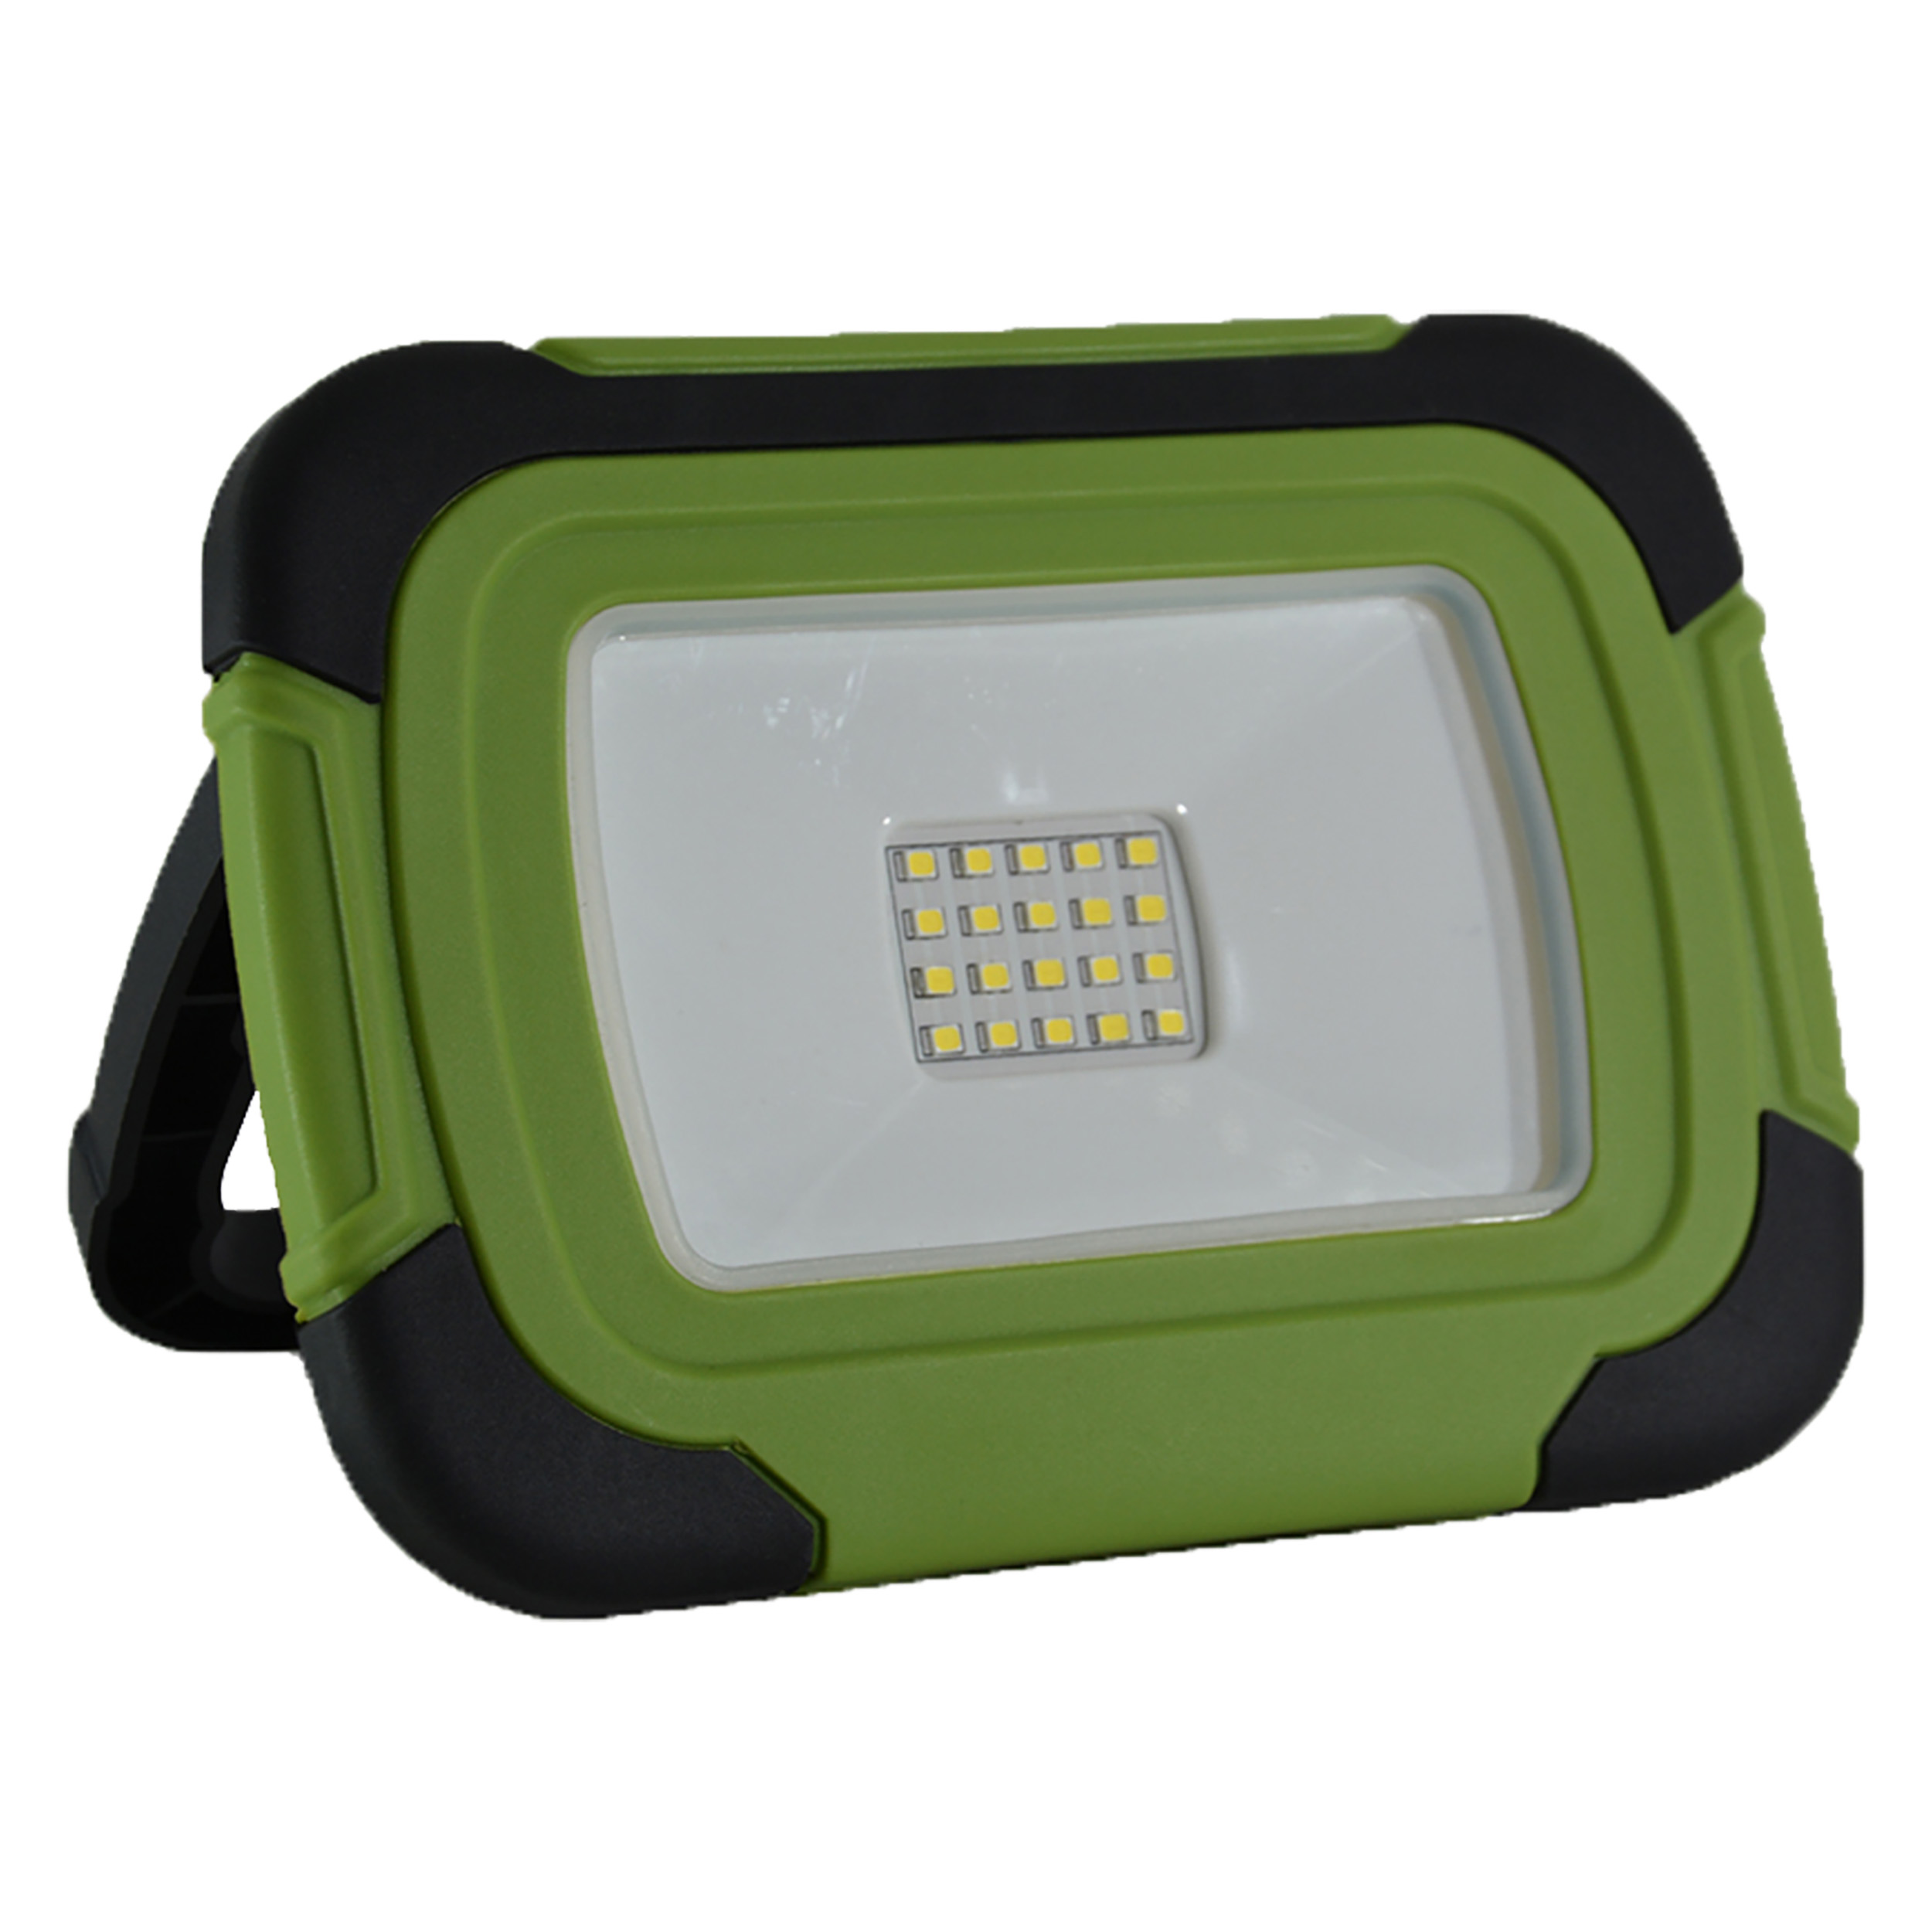 01.593.20 V-TAC  werklamp LED - 10W - oplaadbaar - VT10R - groen/zwart